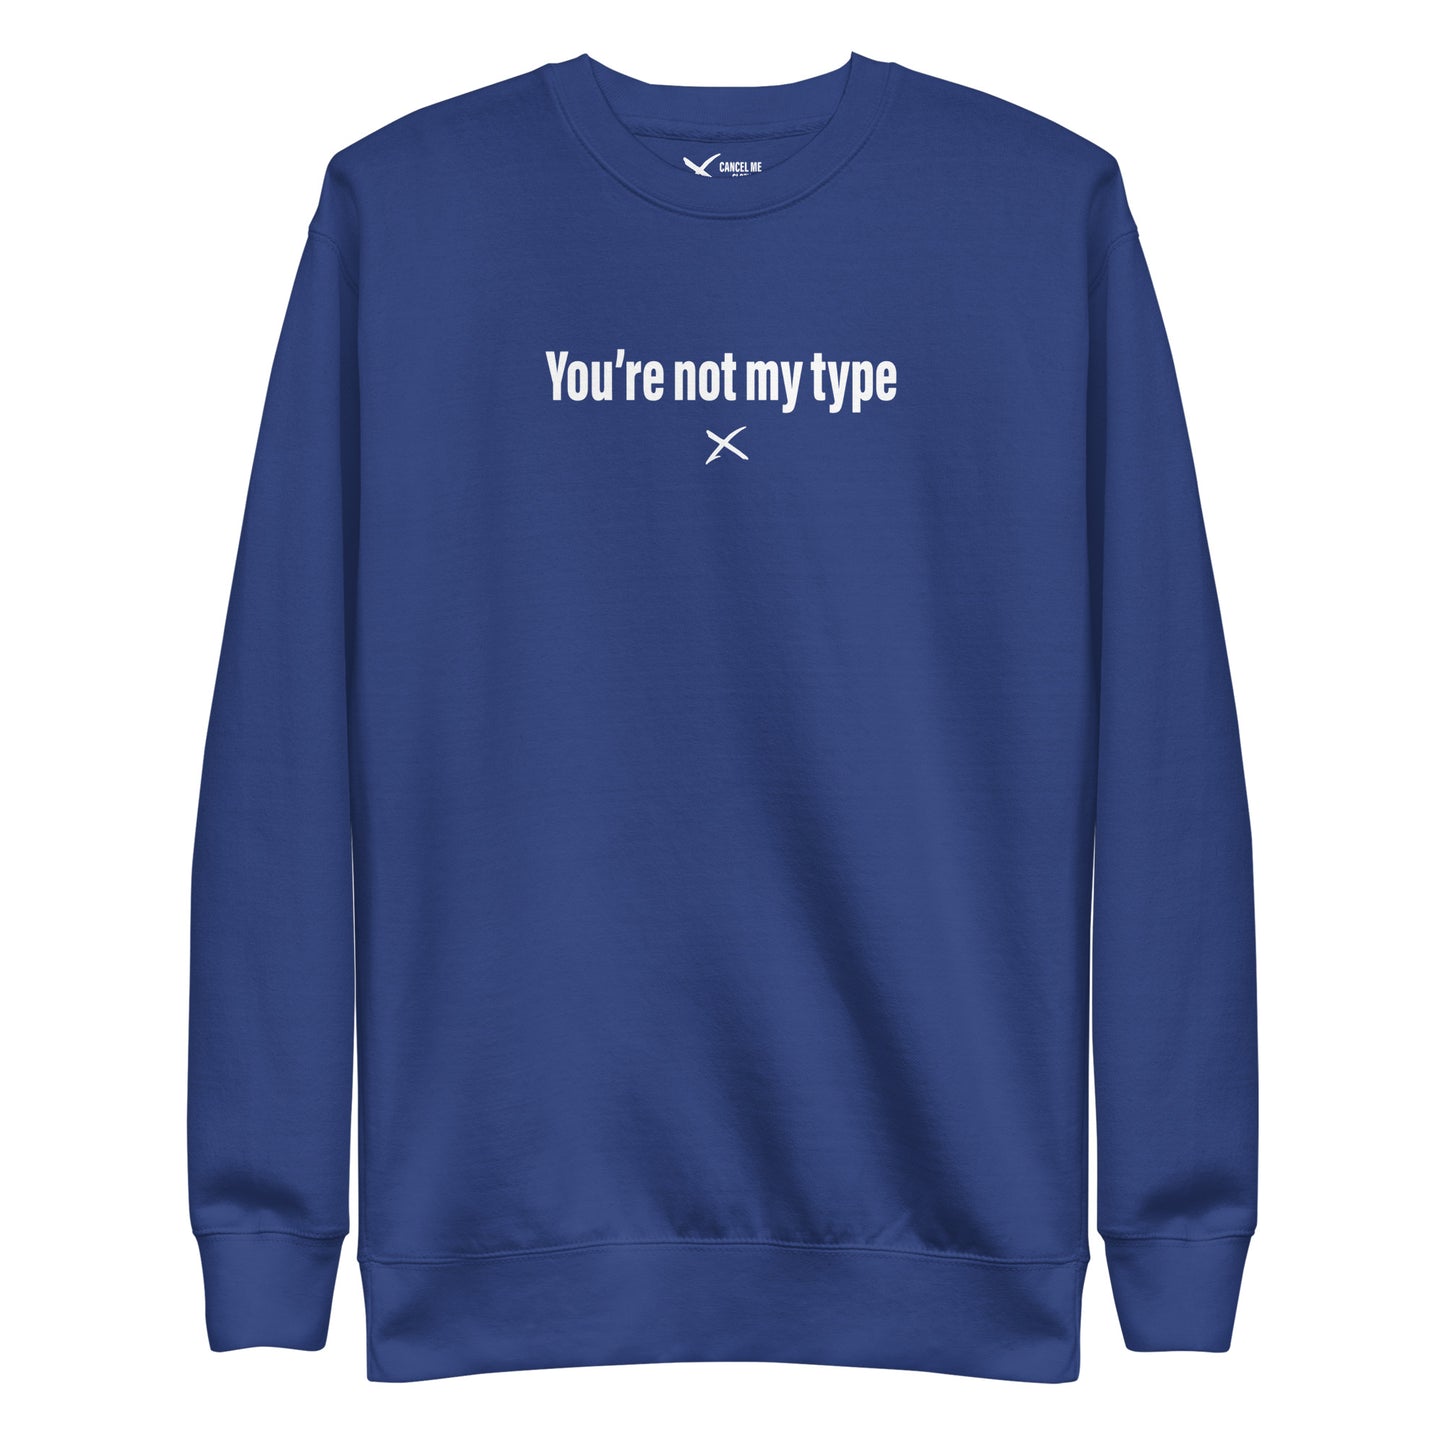 You're not my type - Sweatshirt